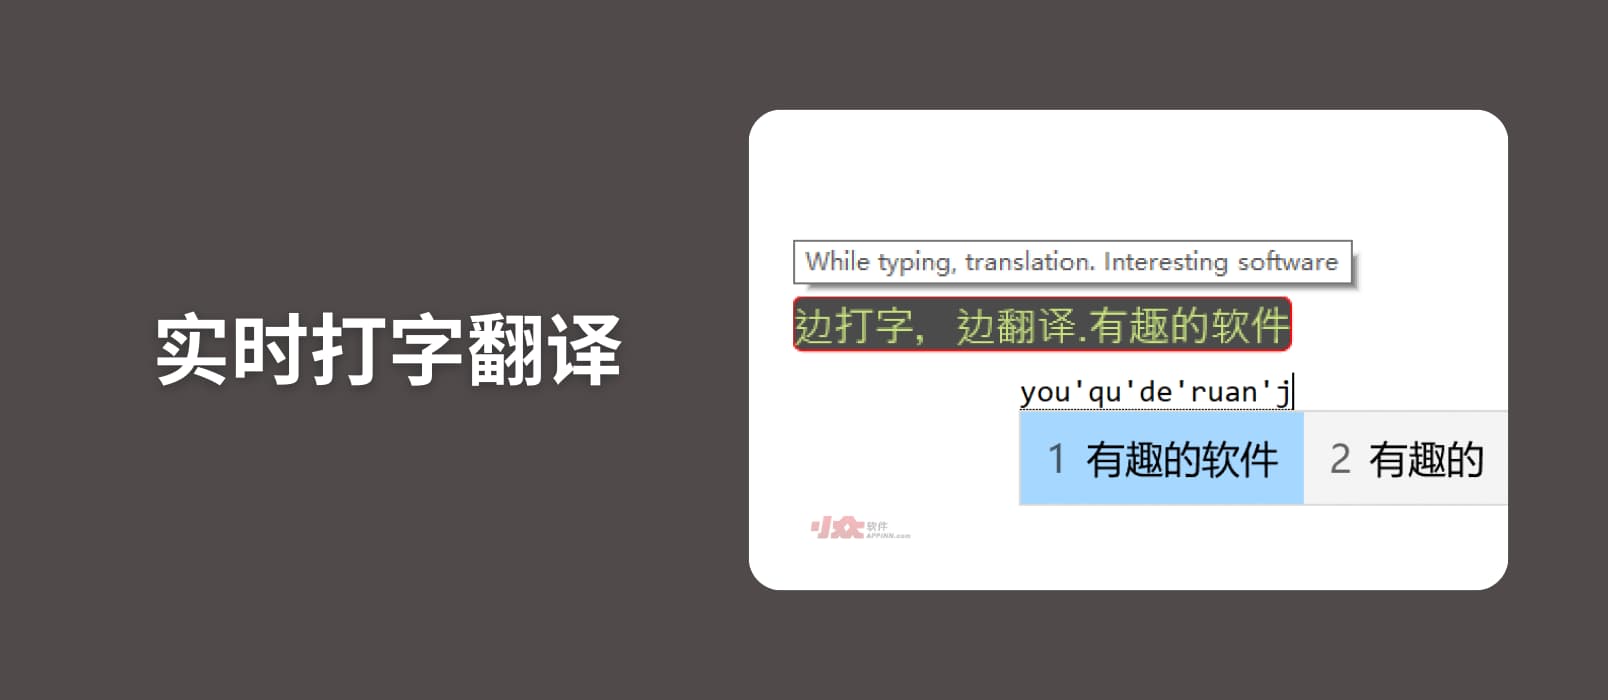 实时打字翻译 - 边打字边翻译，直接输入，支持发音[Windows]